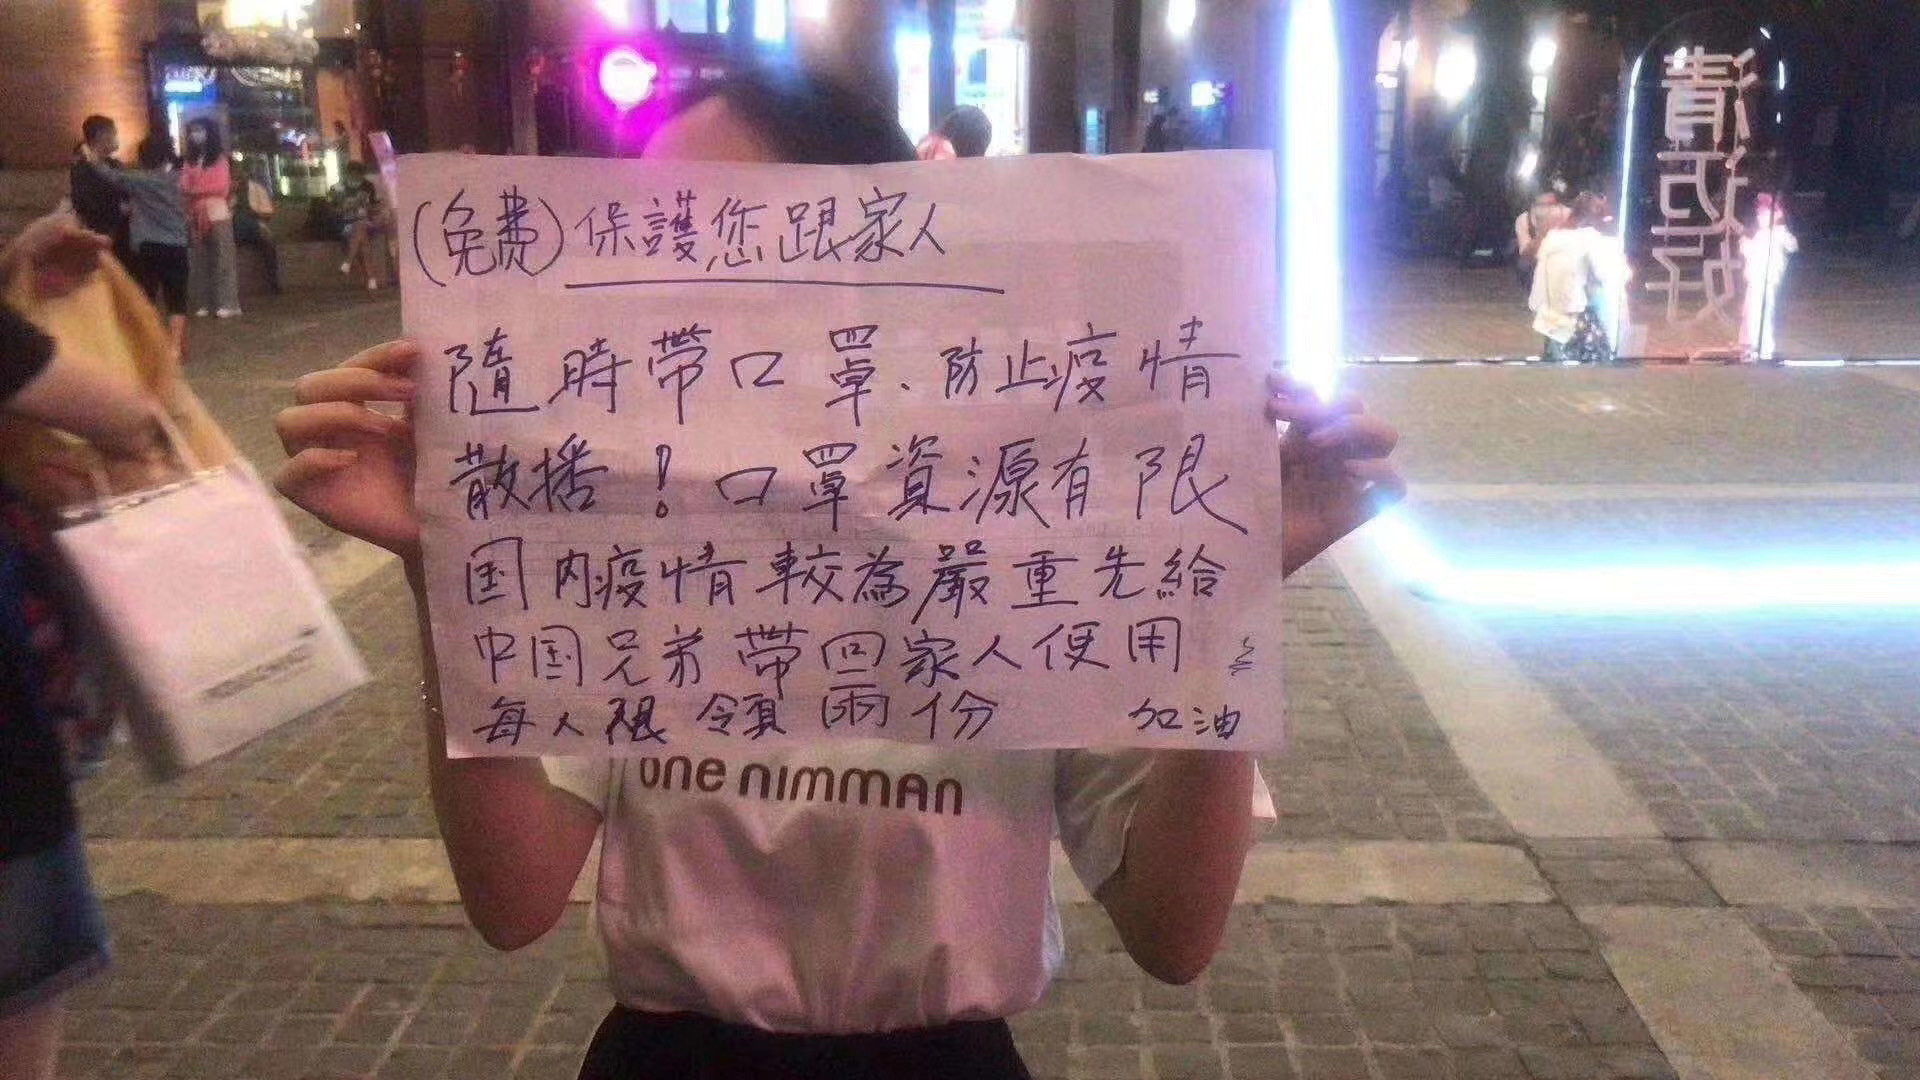 東南亞街頭A一少女呼籲優先保障中國的口罩需求A並免費派送口罩C